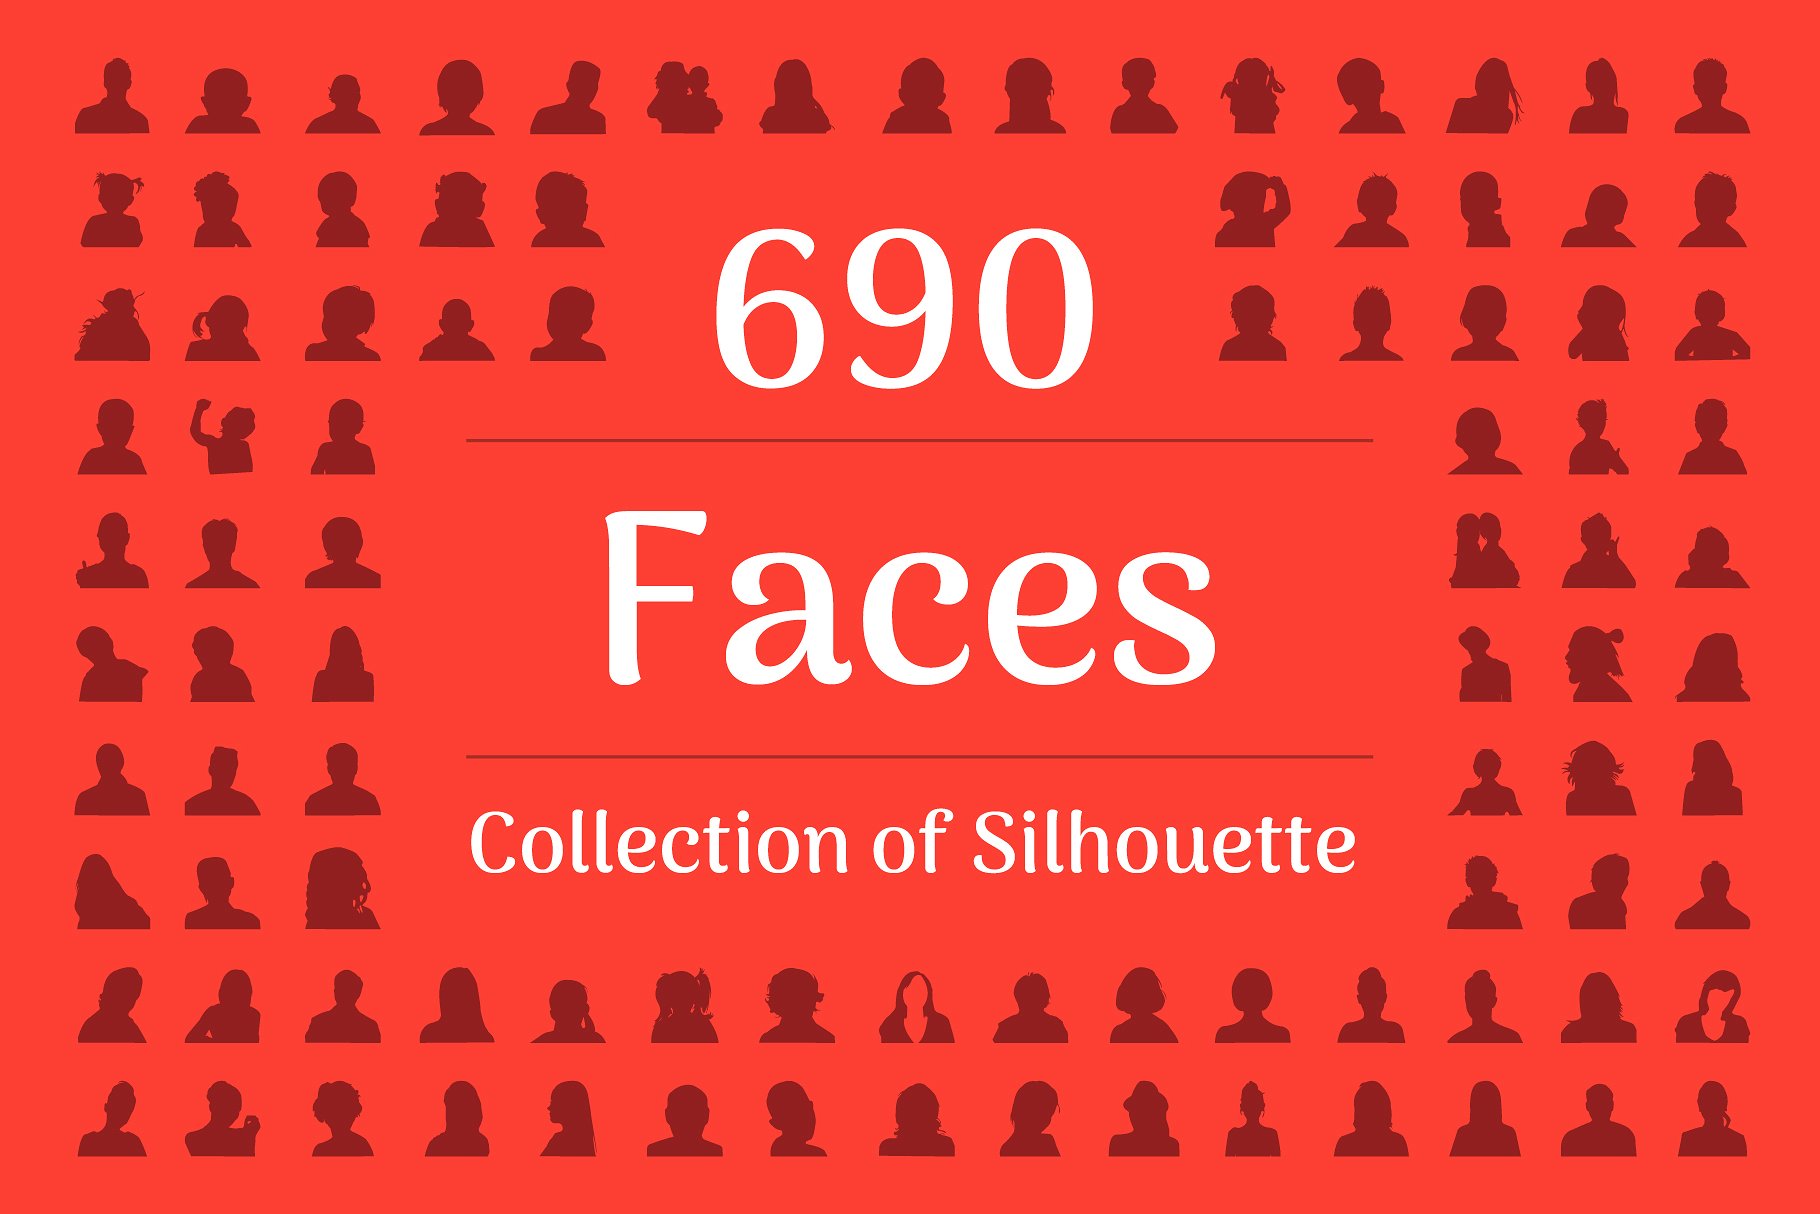 690枚形形色色人物剪影图标 690 Face Silhouette插图